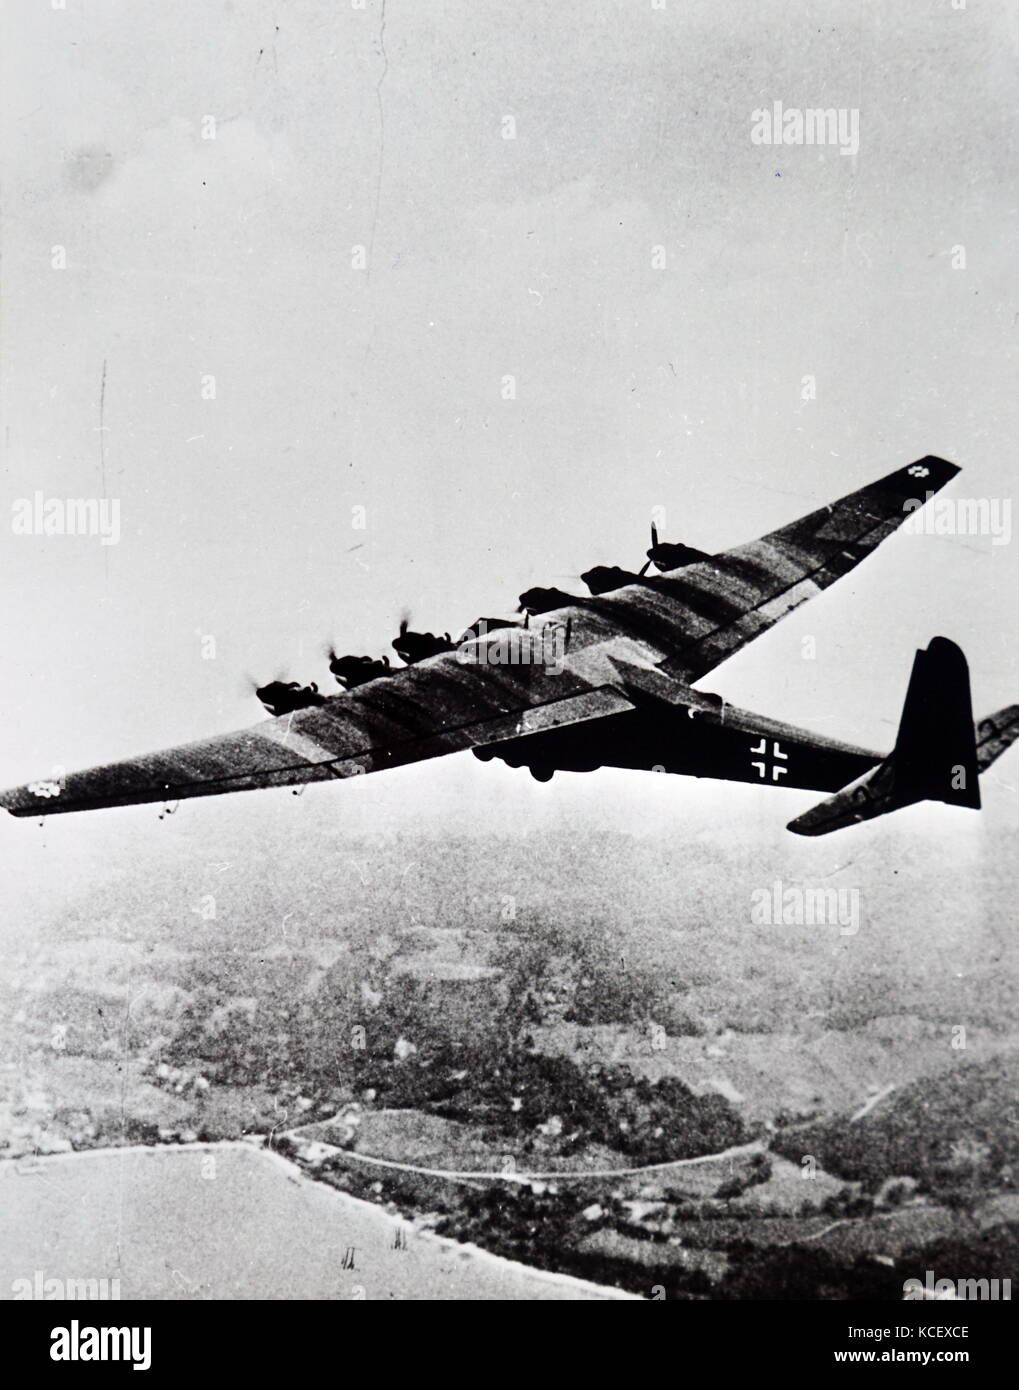 Fotografia di un Messerschmitt Me 323, un tedesco i velivoli militari da trasporto della Seconda Guerra Mondiale. In data xx secolo Foto Stock